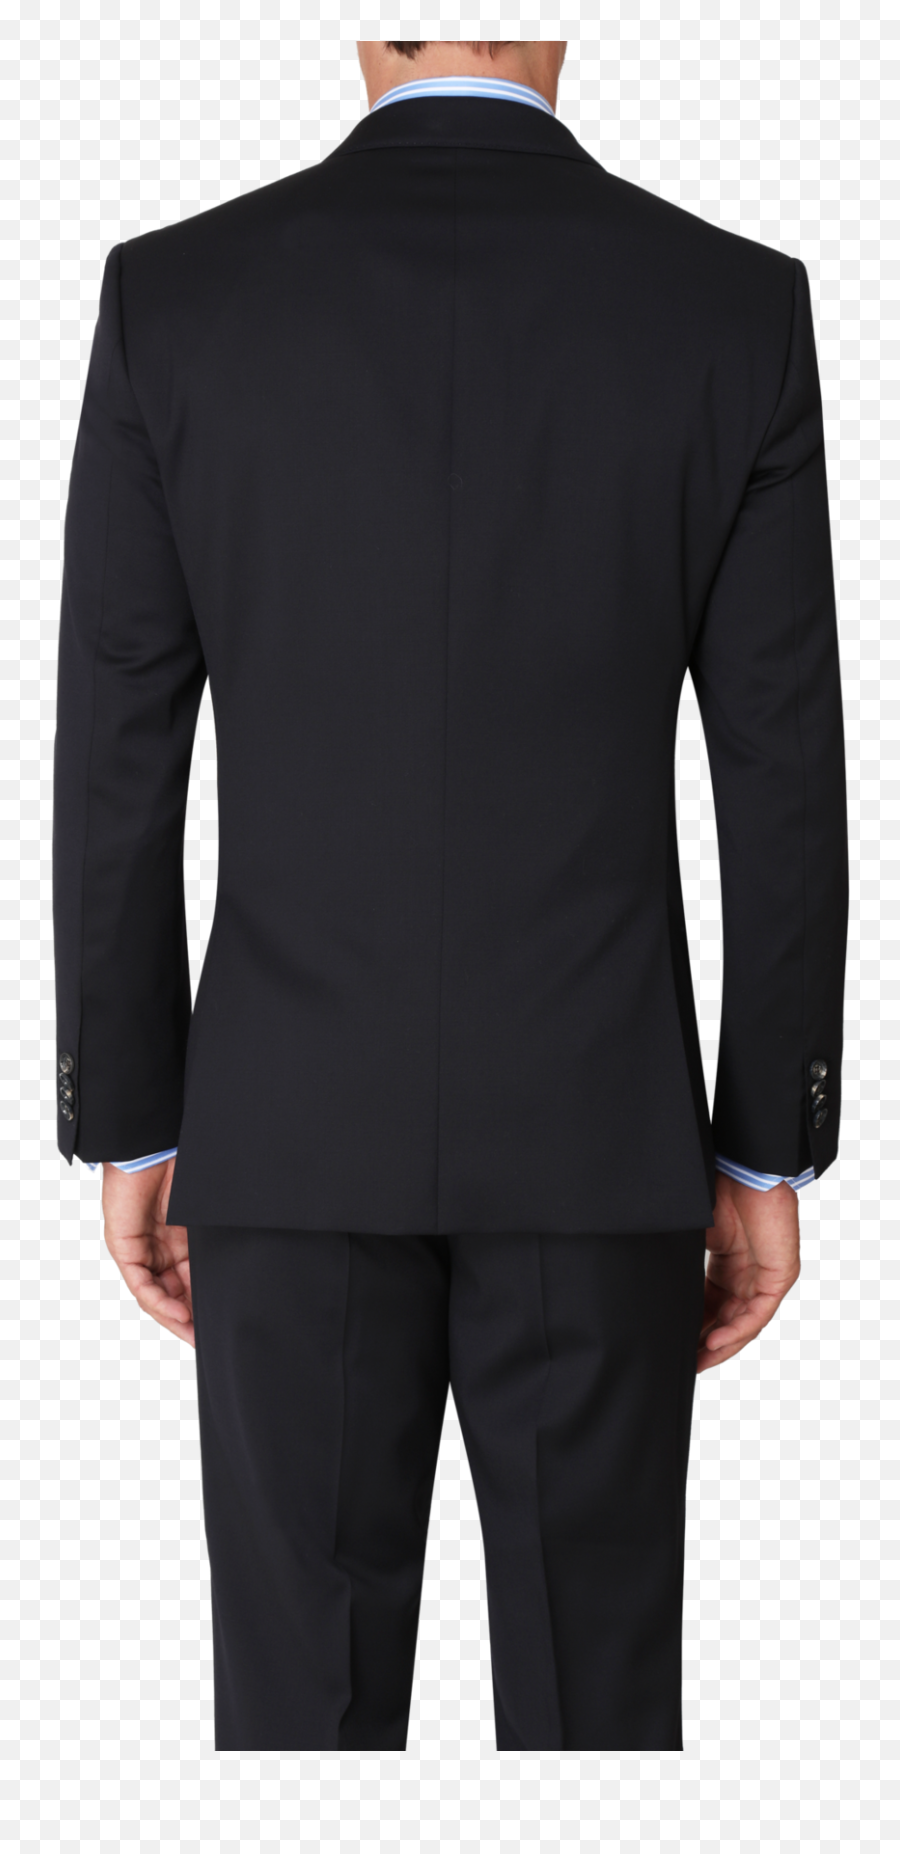 Boston Suit In Dark Blue U2014 Ron Bennett Menswear - Tuxedo Png,Back Png